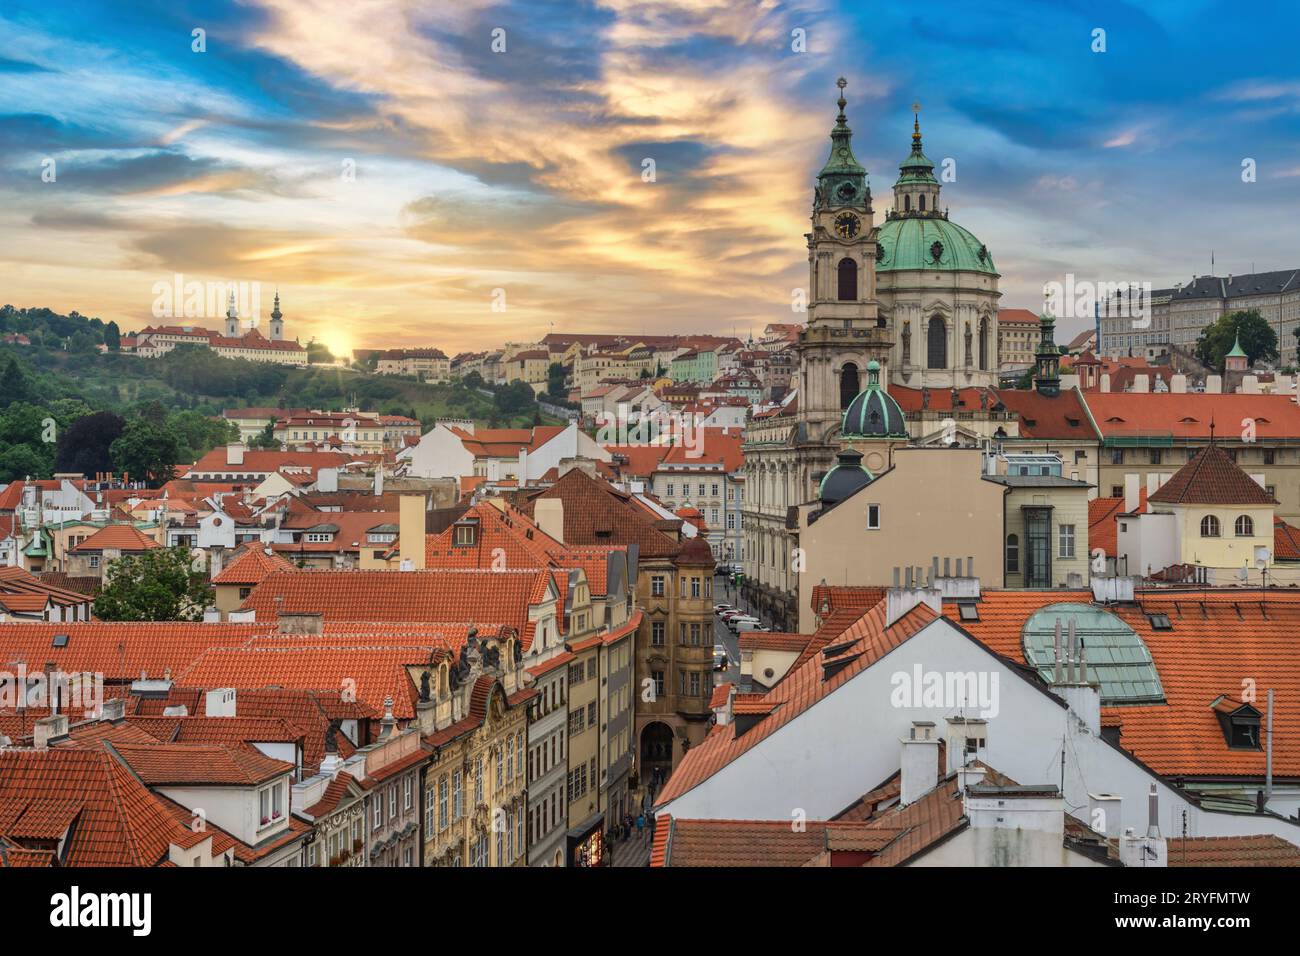 Praga Repubblica Ceca, vista dall'alto dello skyline della città al tramonto nella città vecchia di Praga e in St Nicholas Churc Foto Stock